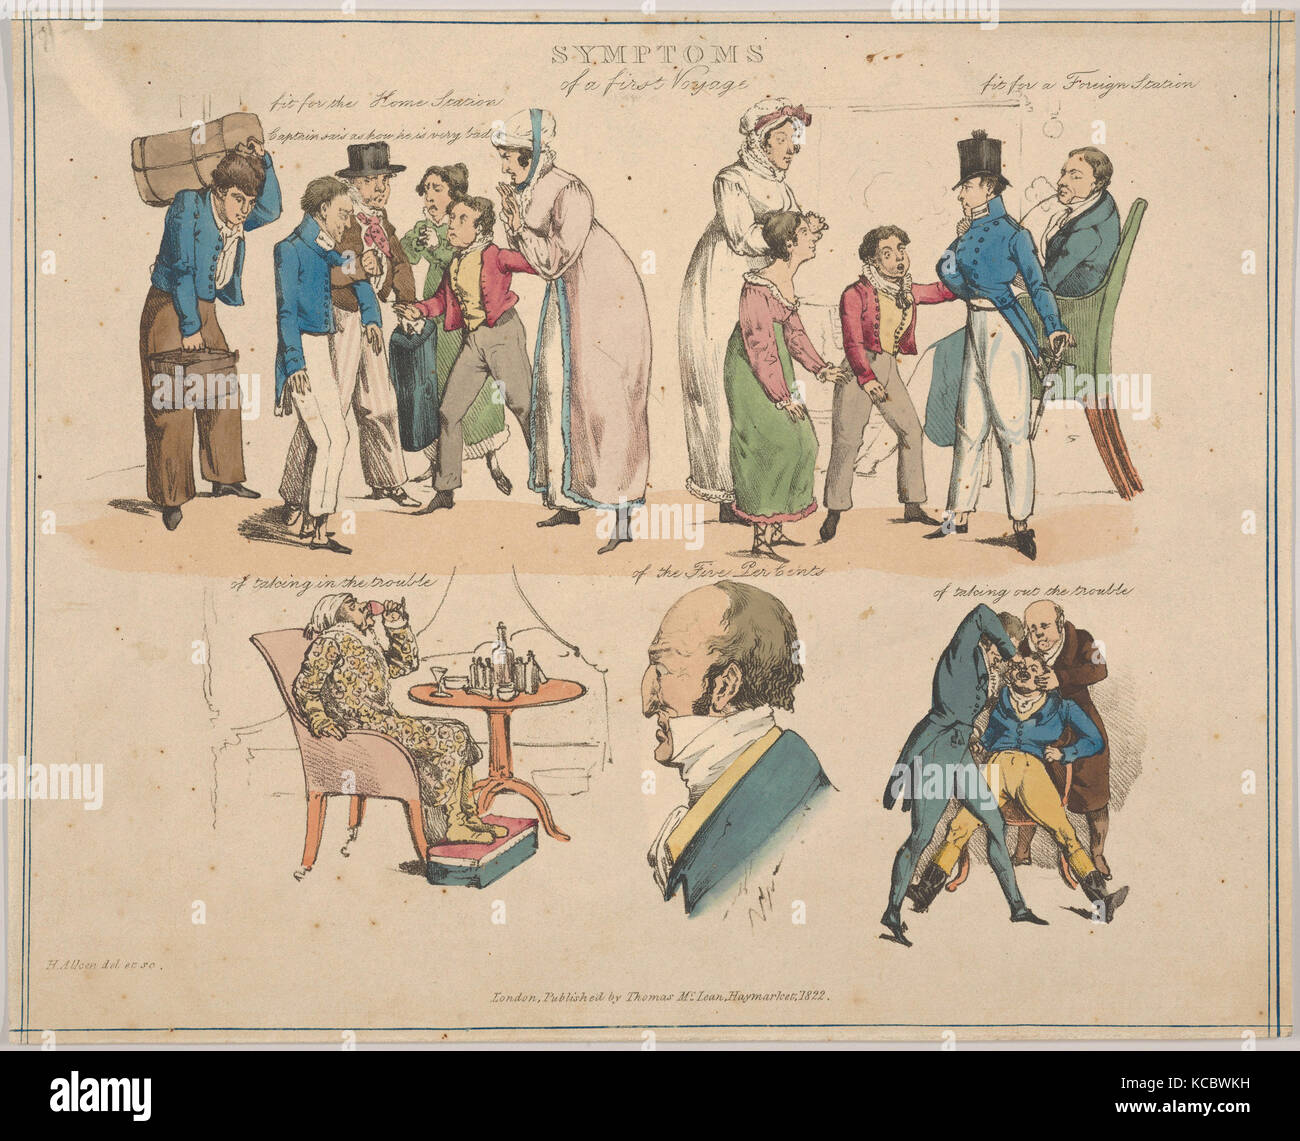 Symptome einer ersten Reise, Henry Thomas Alken, 1822 Stockfoto